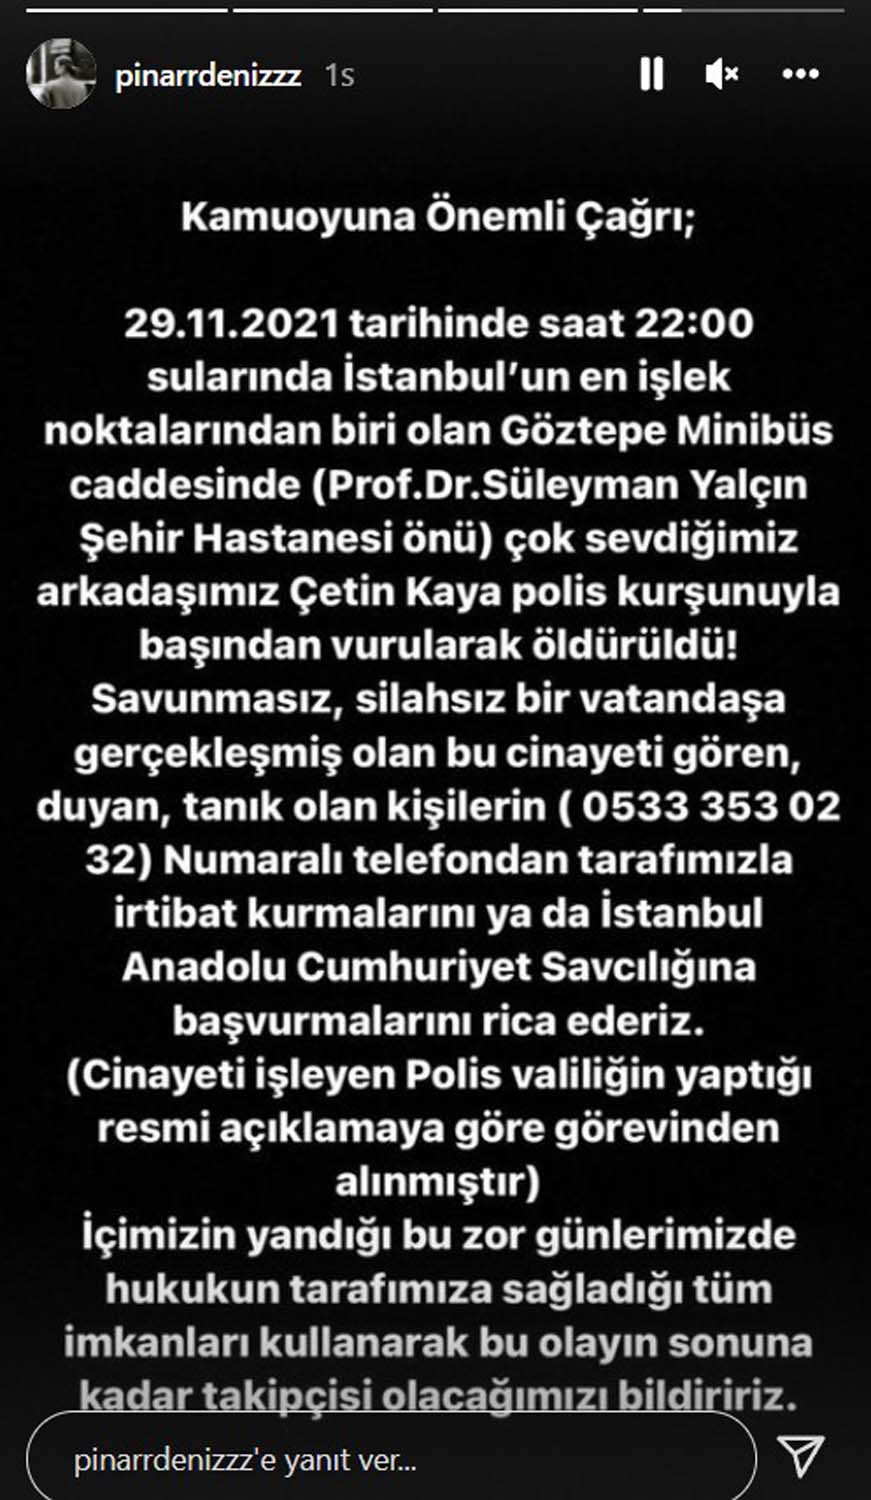 Pınar Deniz'in arkadaşı öldürüldü! Sosyal medya hesabında kan donduran açıklamayla kamuoyuna çağrıda bulundu!